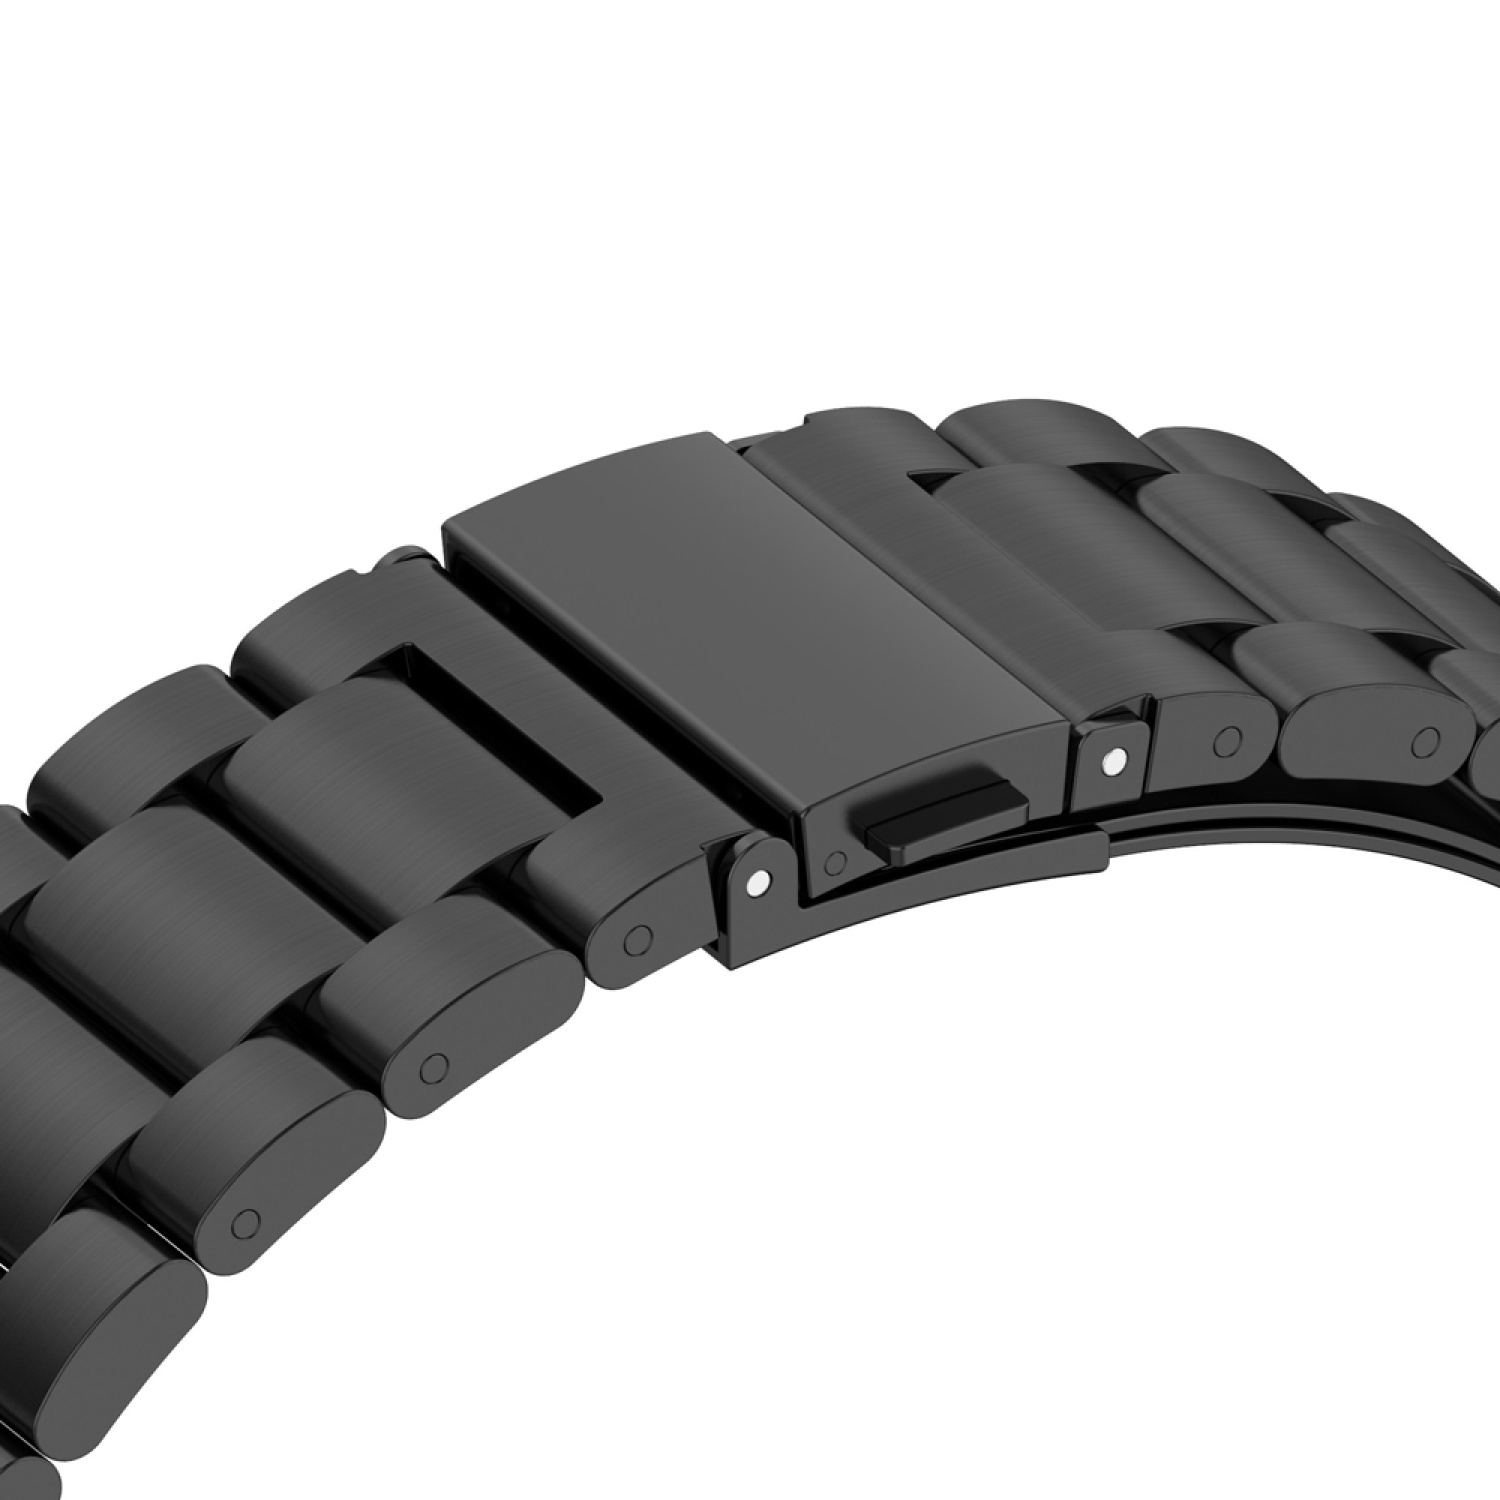 KÖNIG DESIGN Silber Watch 42mm, Sportarmband, Ersatzband, GT 3 Huawei